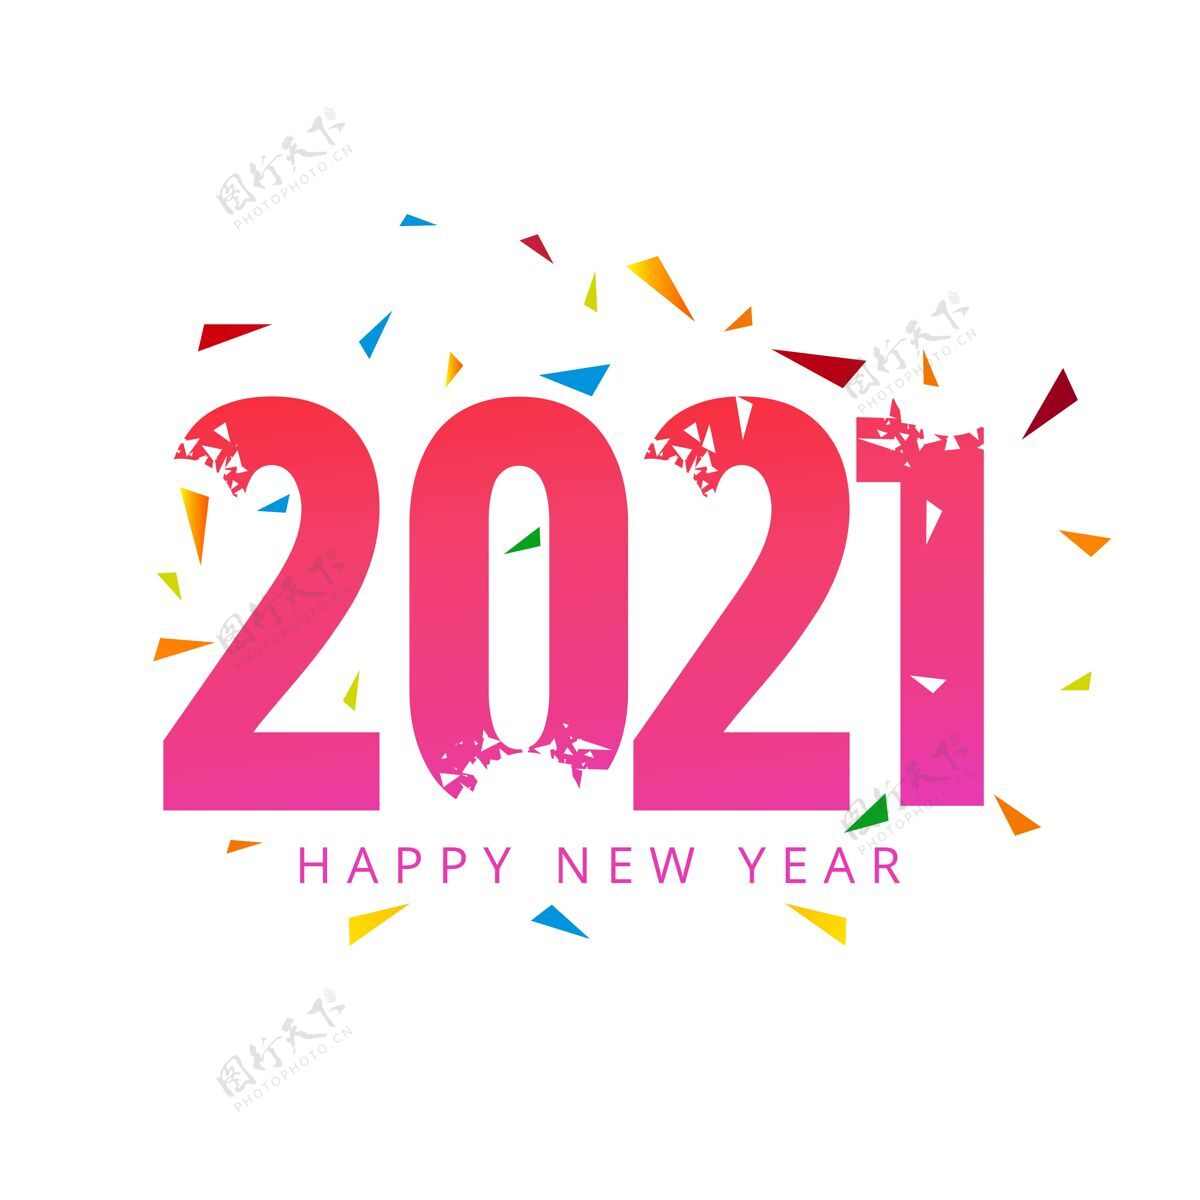 数字新年快乐2021年节日庆典背景年粉色新年